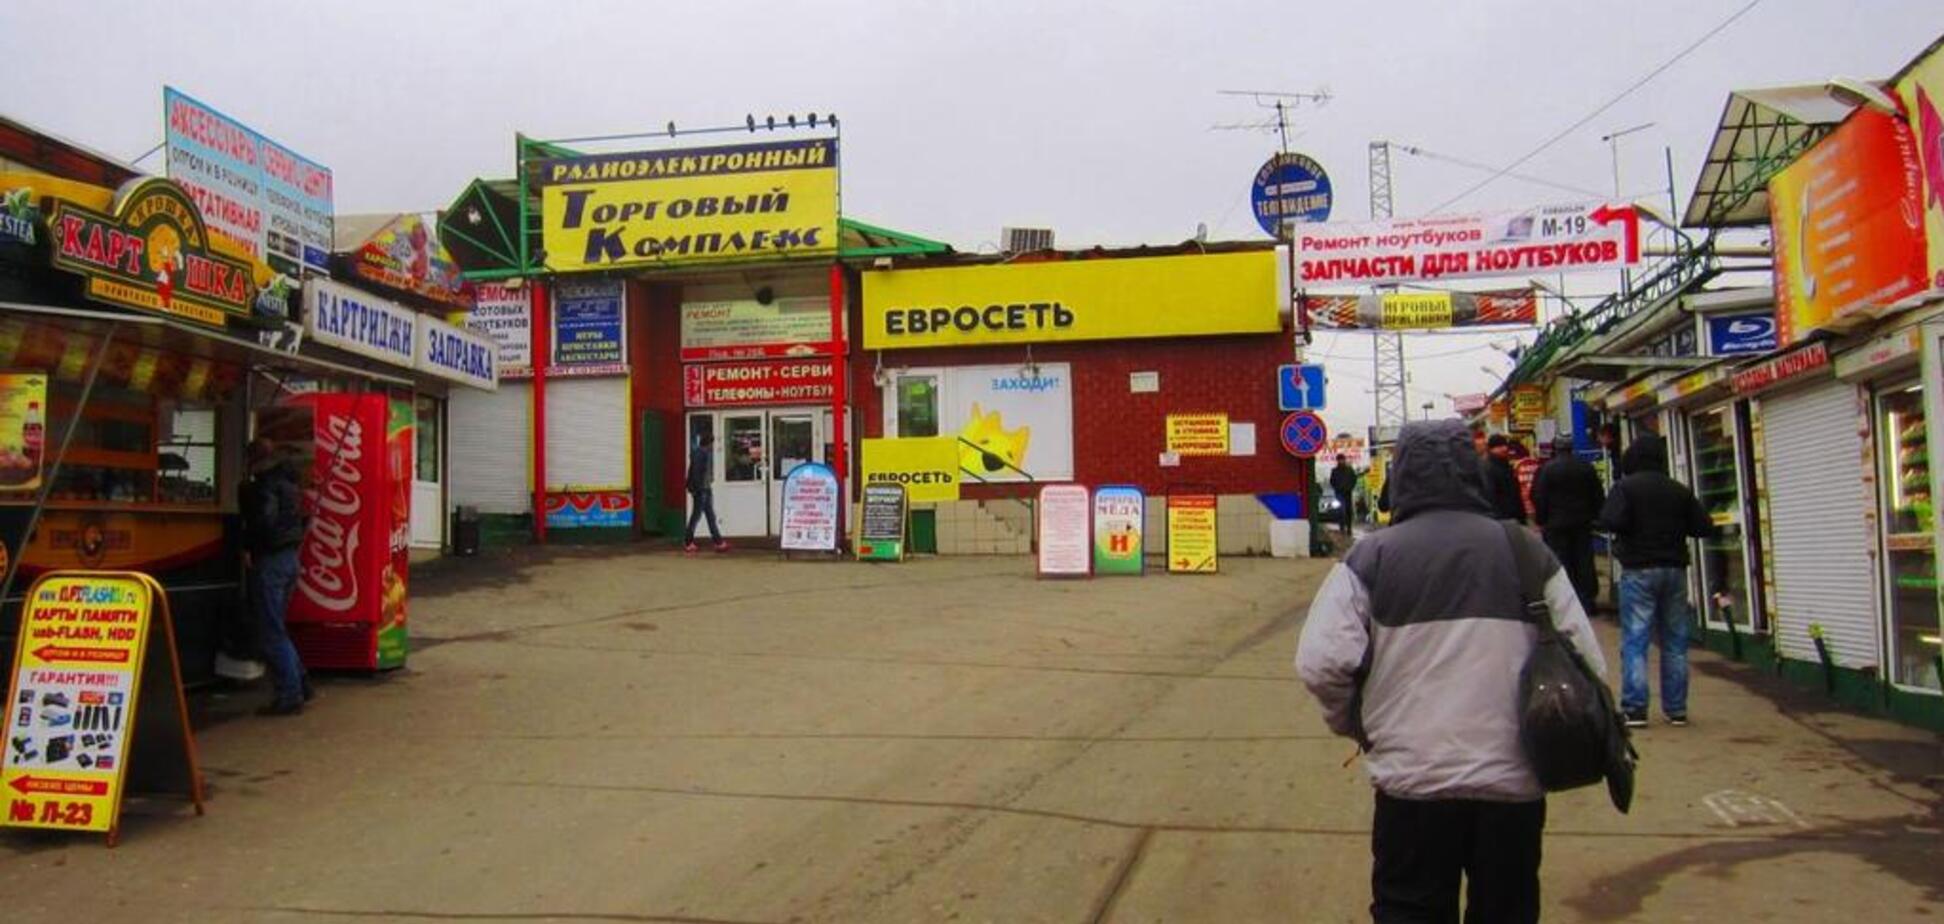 'Фактически мертв': всплыли новые данные об оккупированном Донецке